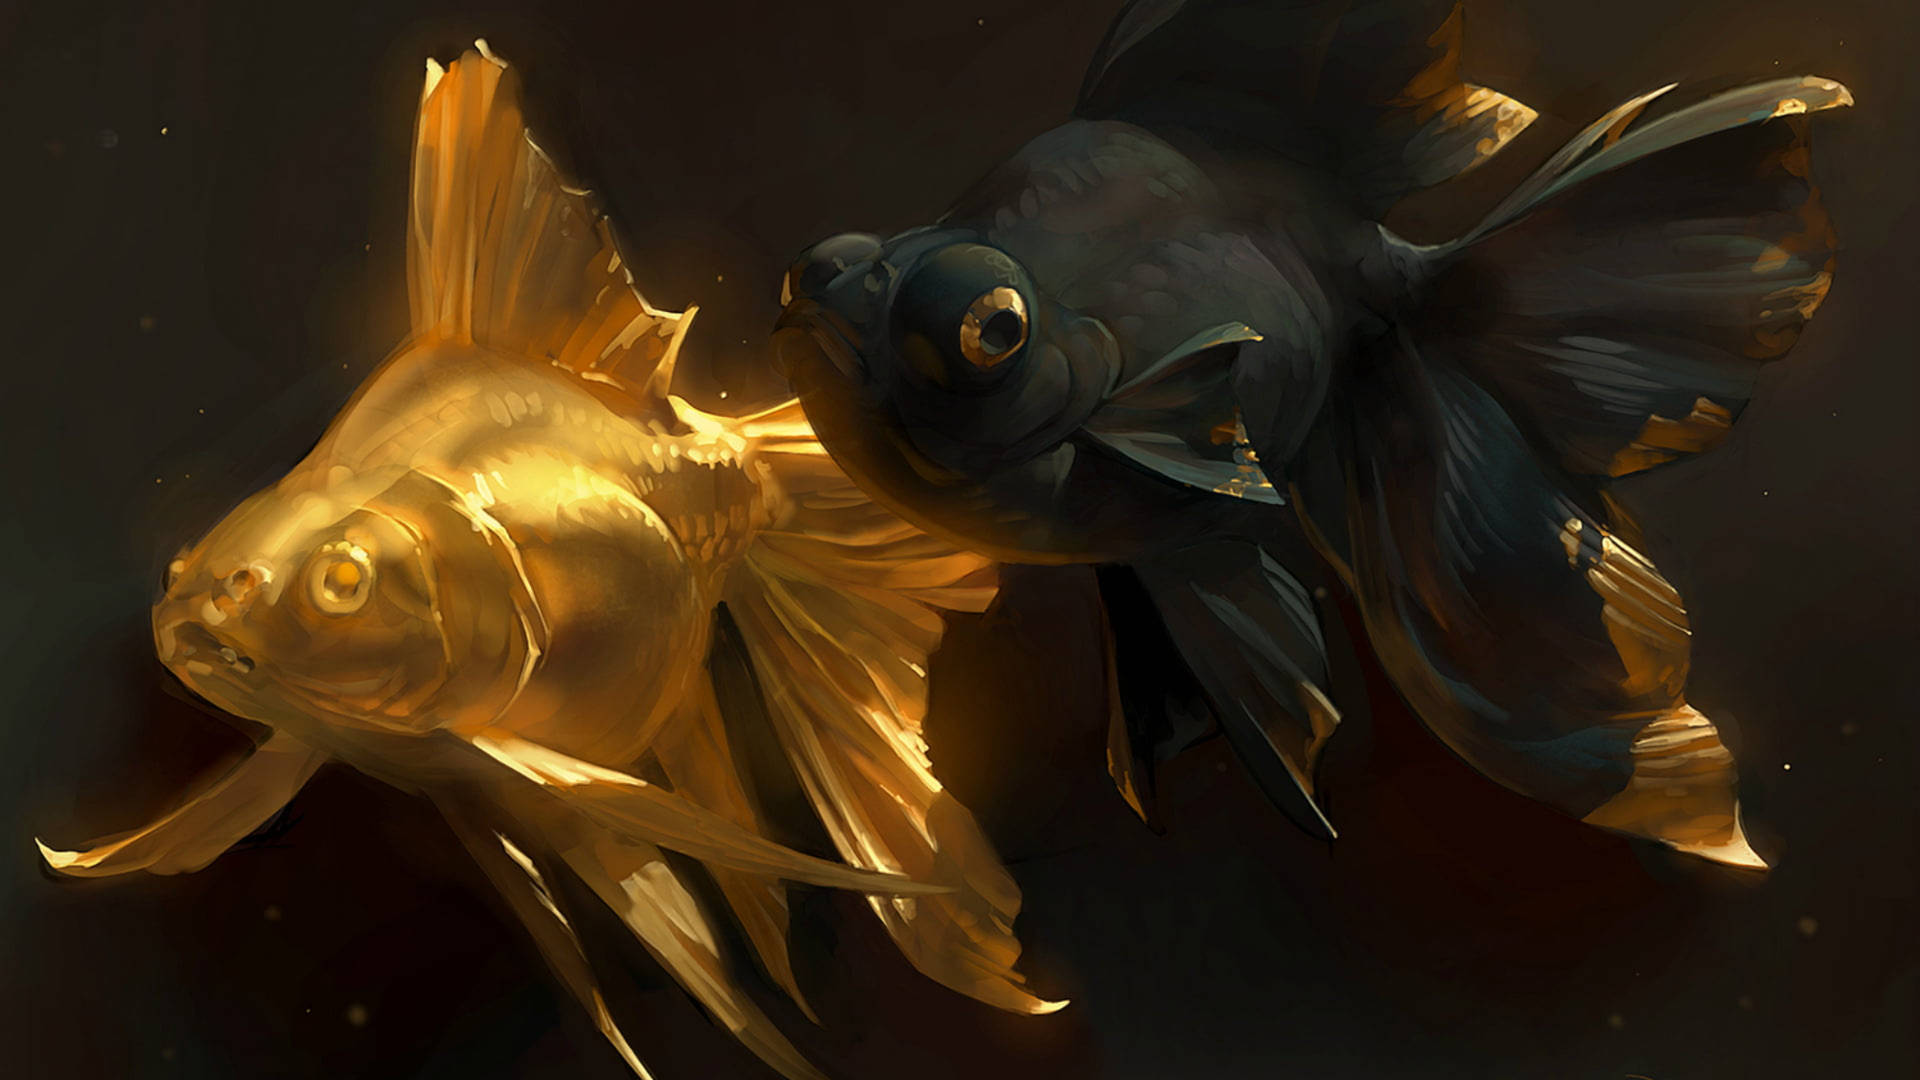 Schwarzund Goldfisch-kunstwerk. Wallpaper